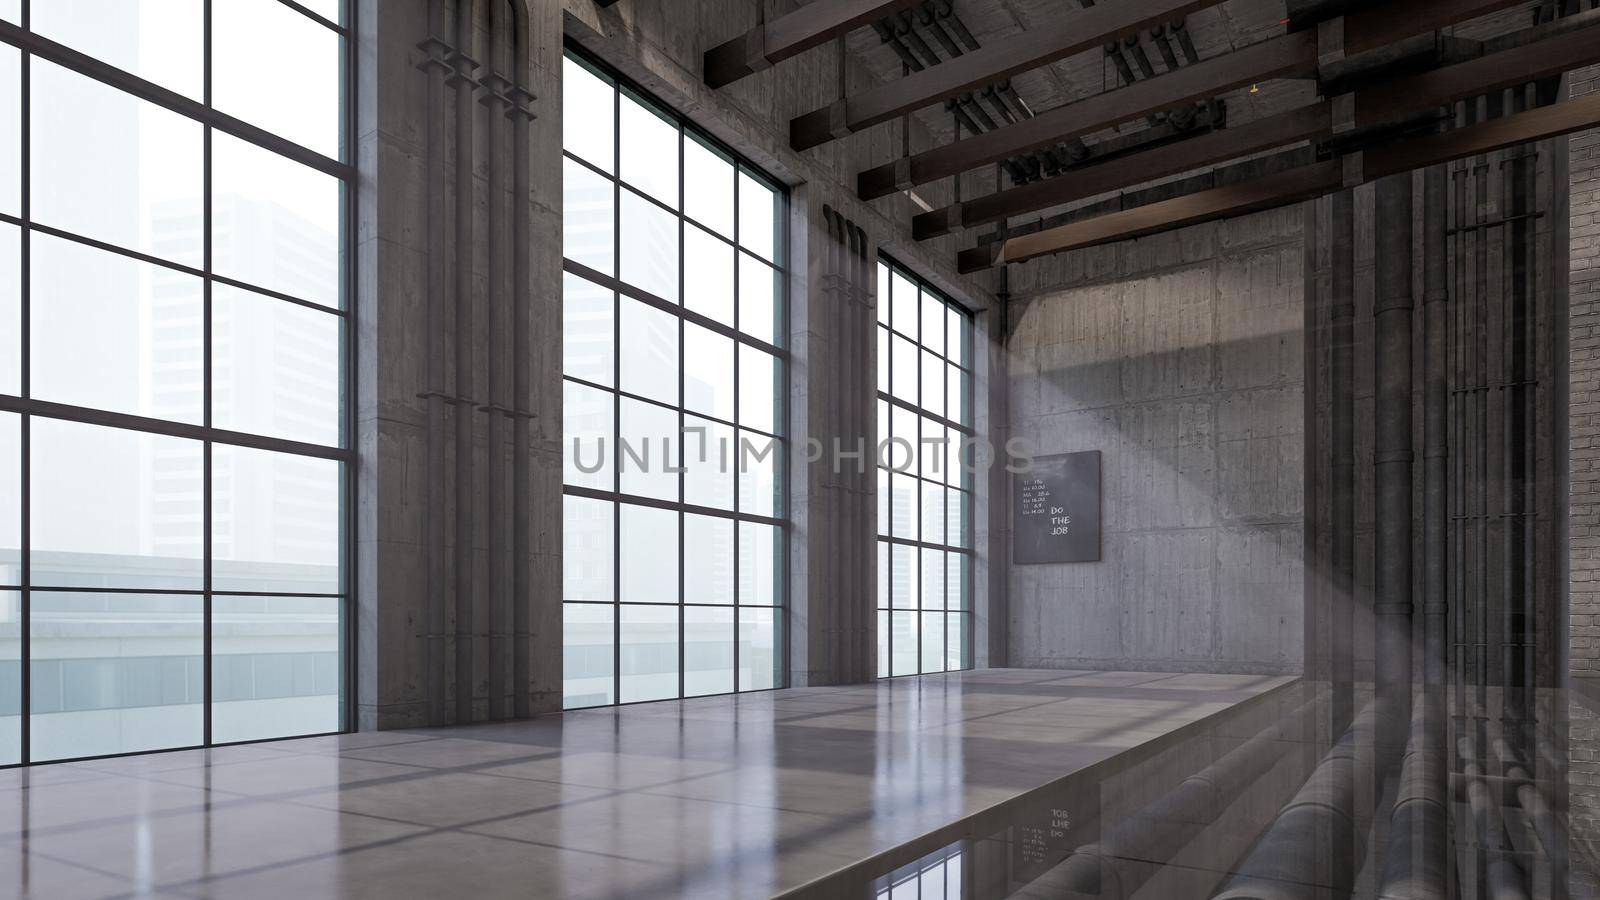 3D Interior Rendering Of Industrial Loft Hall Room Illustration